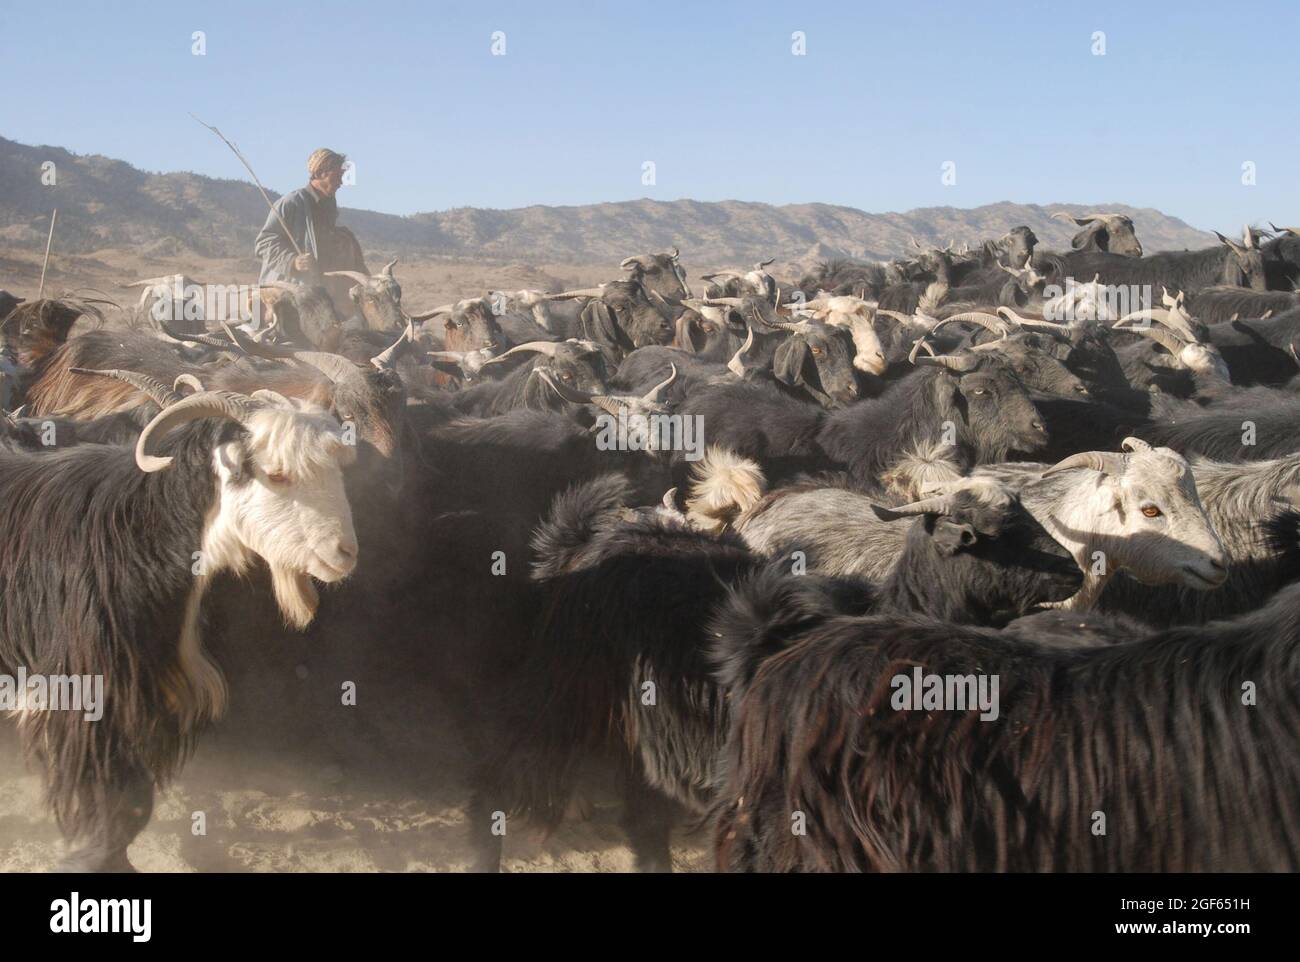 Ein afghanischer Schäferhund pfeift und schreit, um seine Ziegenherde in Bewegung zu halten, während er an einem Patrouillenstützpunkt der 173. Luftbrigade in der östlichen Provinz Paktika, Afghanistan, im November 9 vorbeikommt. Stockfoto